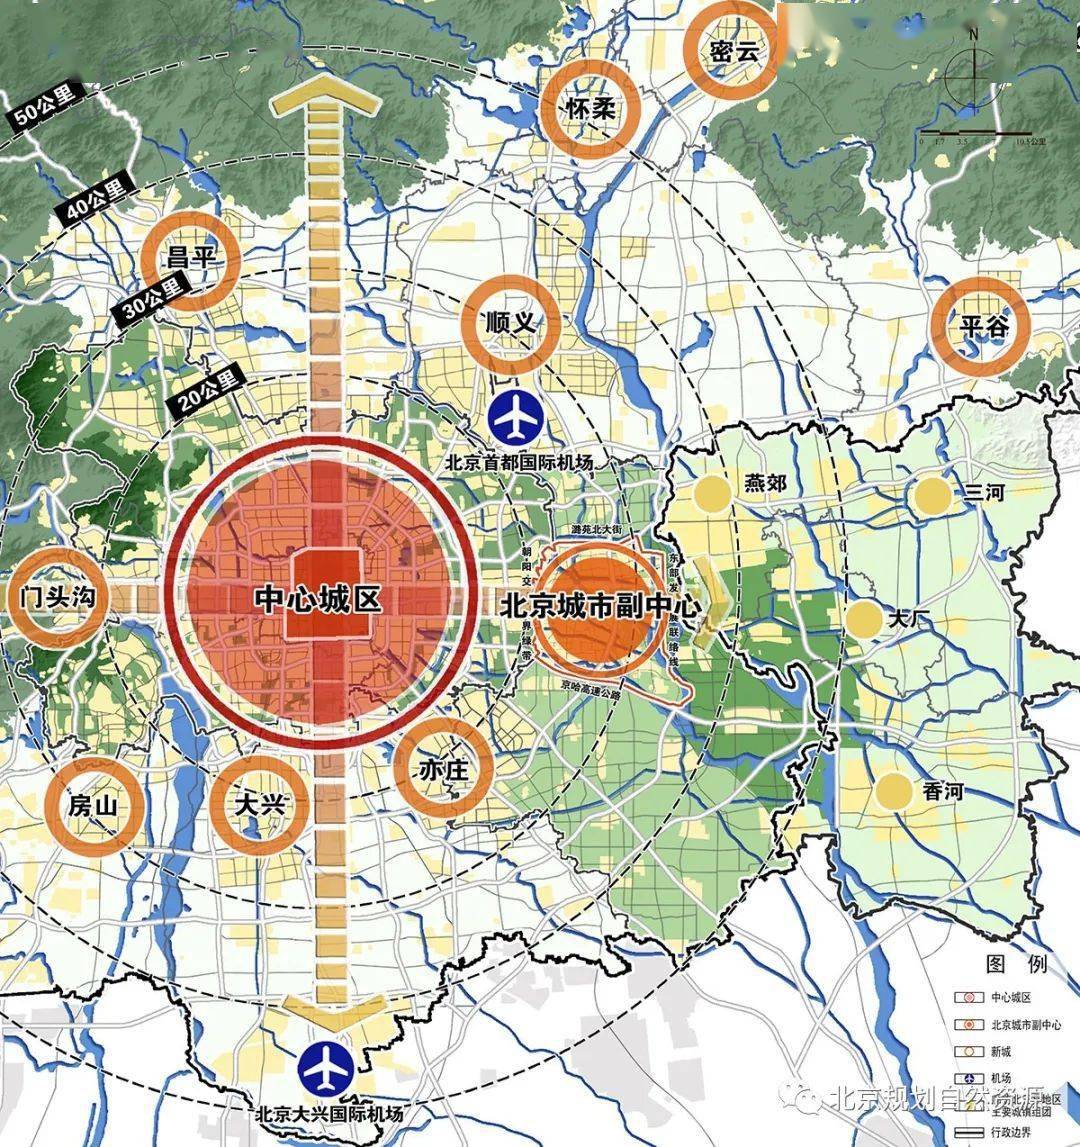 《北京城市总体规划(2016年—2035年)》实施情况的报告